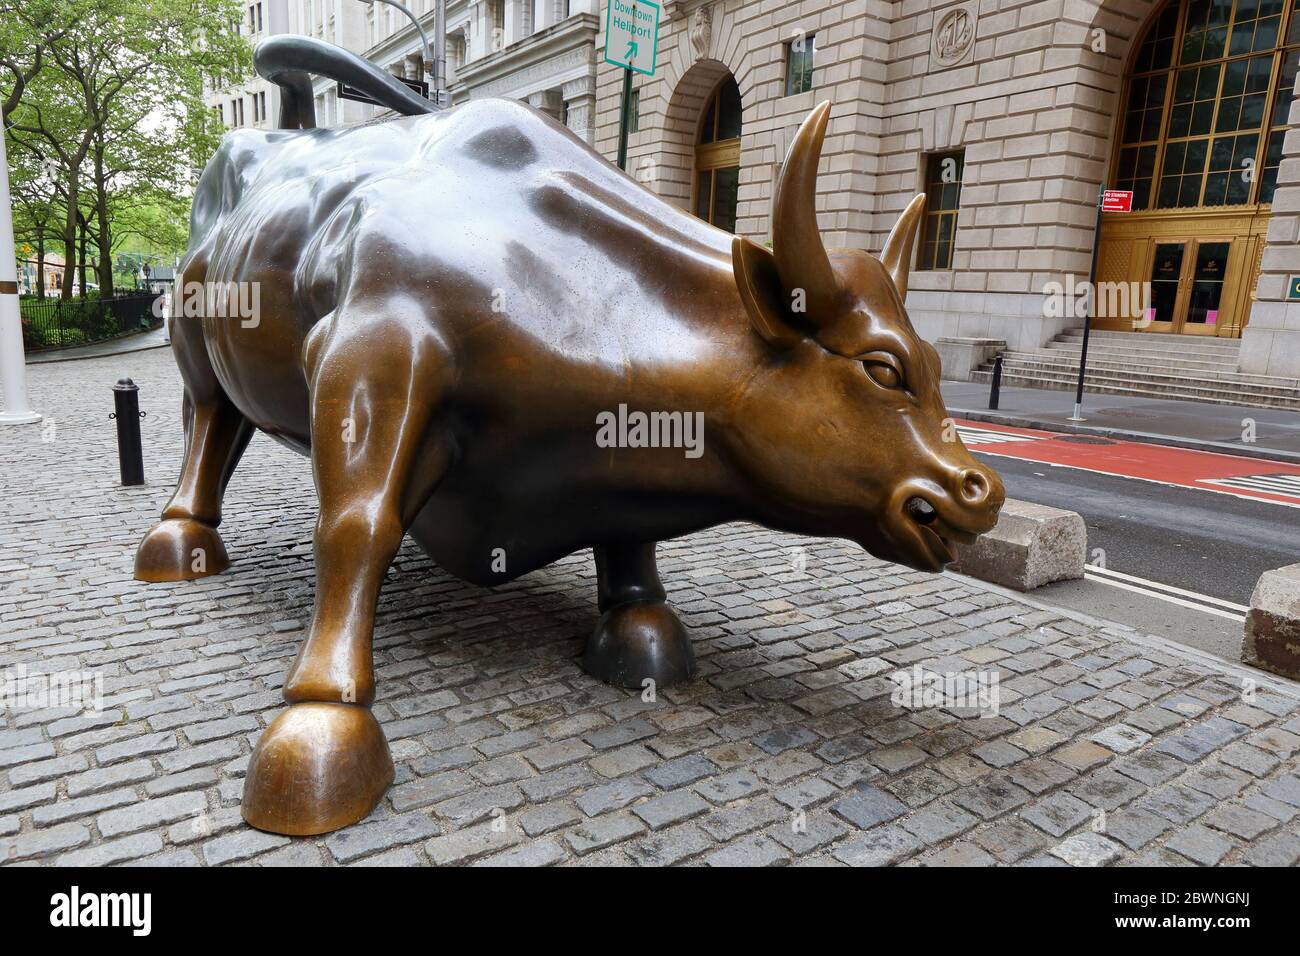 Chargement Bull par Arturo Di Modica. Une sculpture en bronze qui représente Wall Street, située à Bowling Green, Manhattan, New York. Personne Banque D'Images